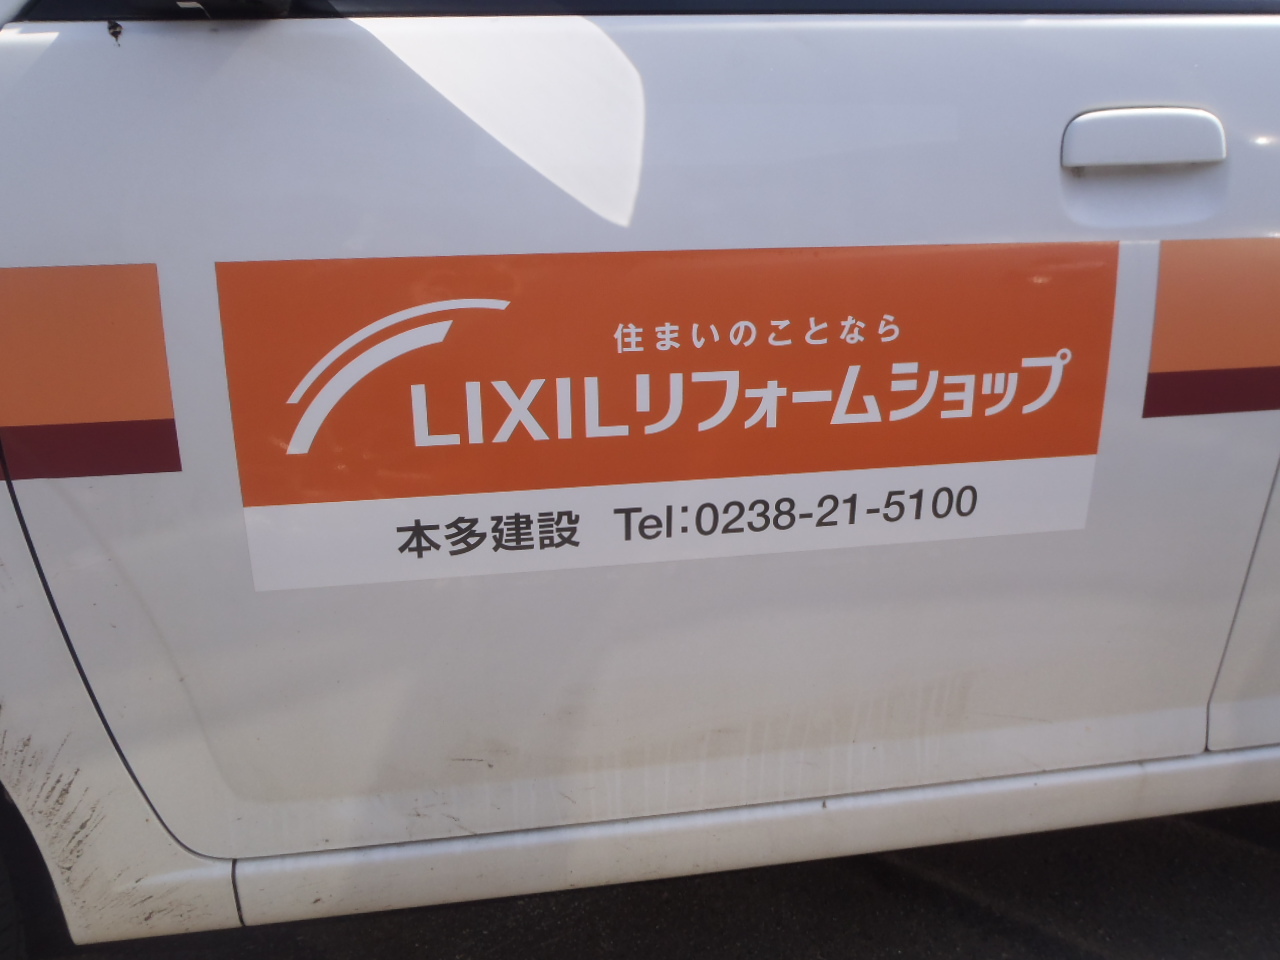 https://www.lixil-reformshop.jp/shop/SP00000487/lixil1.JPG